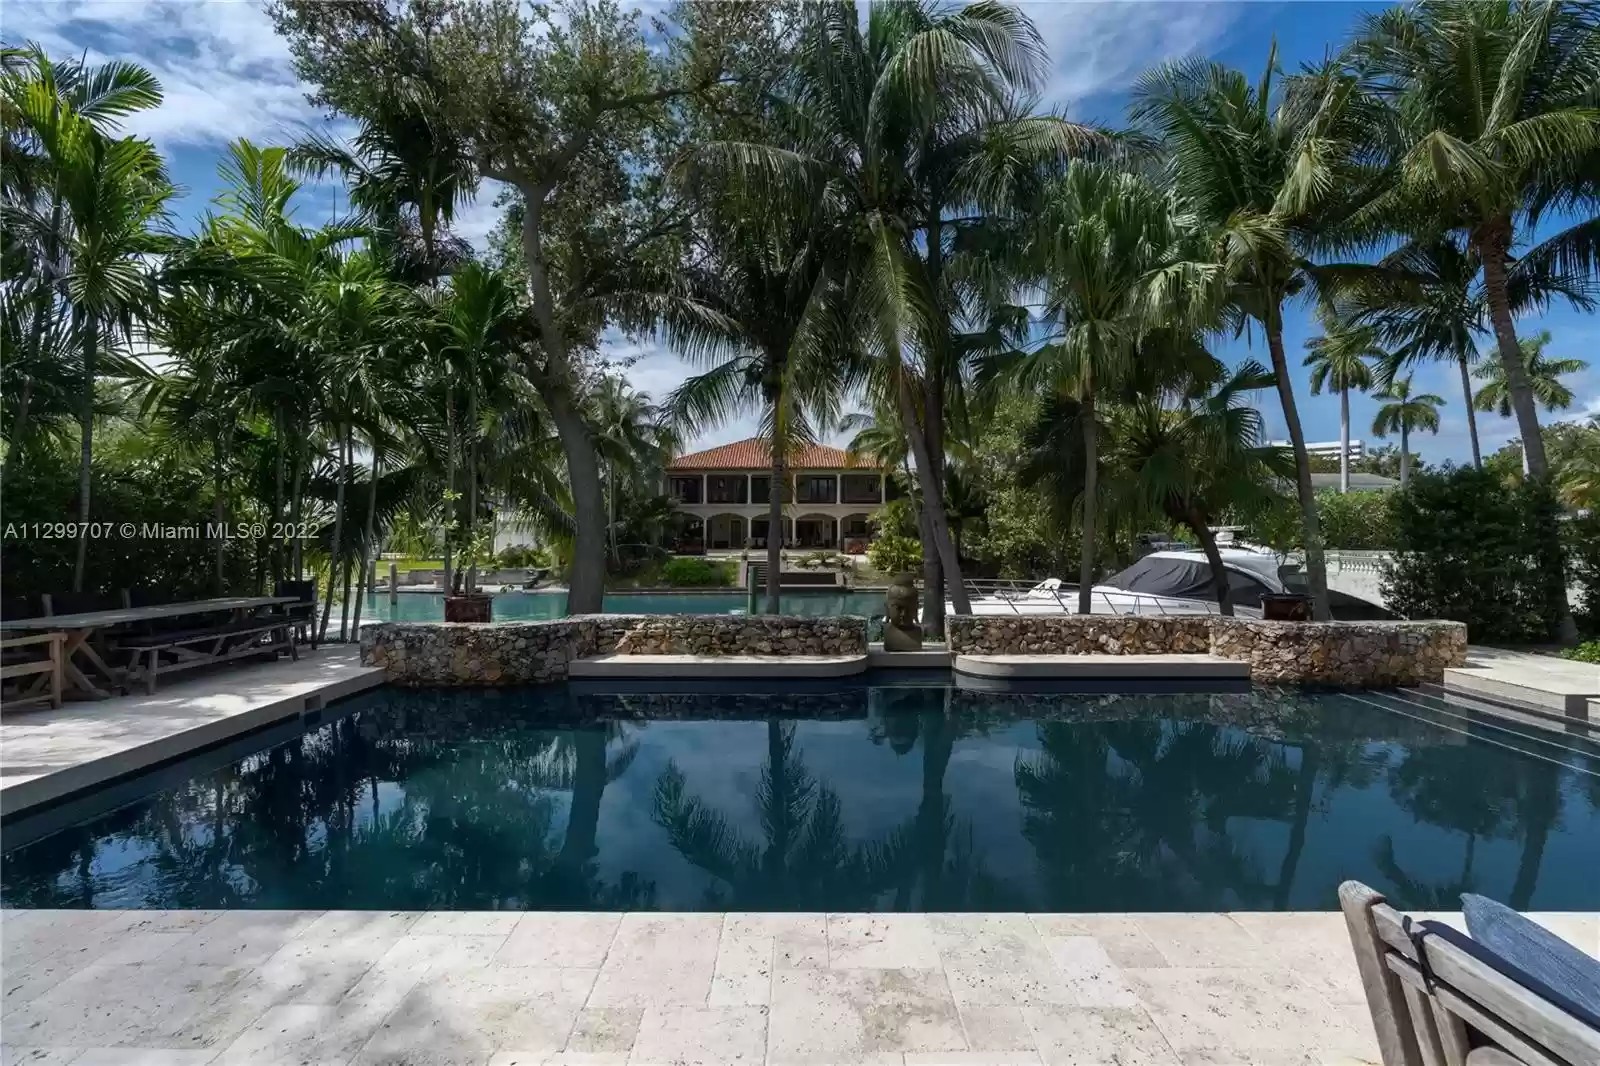 Mansão de Joe Jonas e Sophie Turner em Miami custa mais de R$ 90 milhões — Foto: Realtor